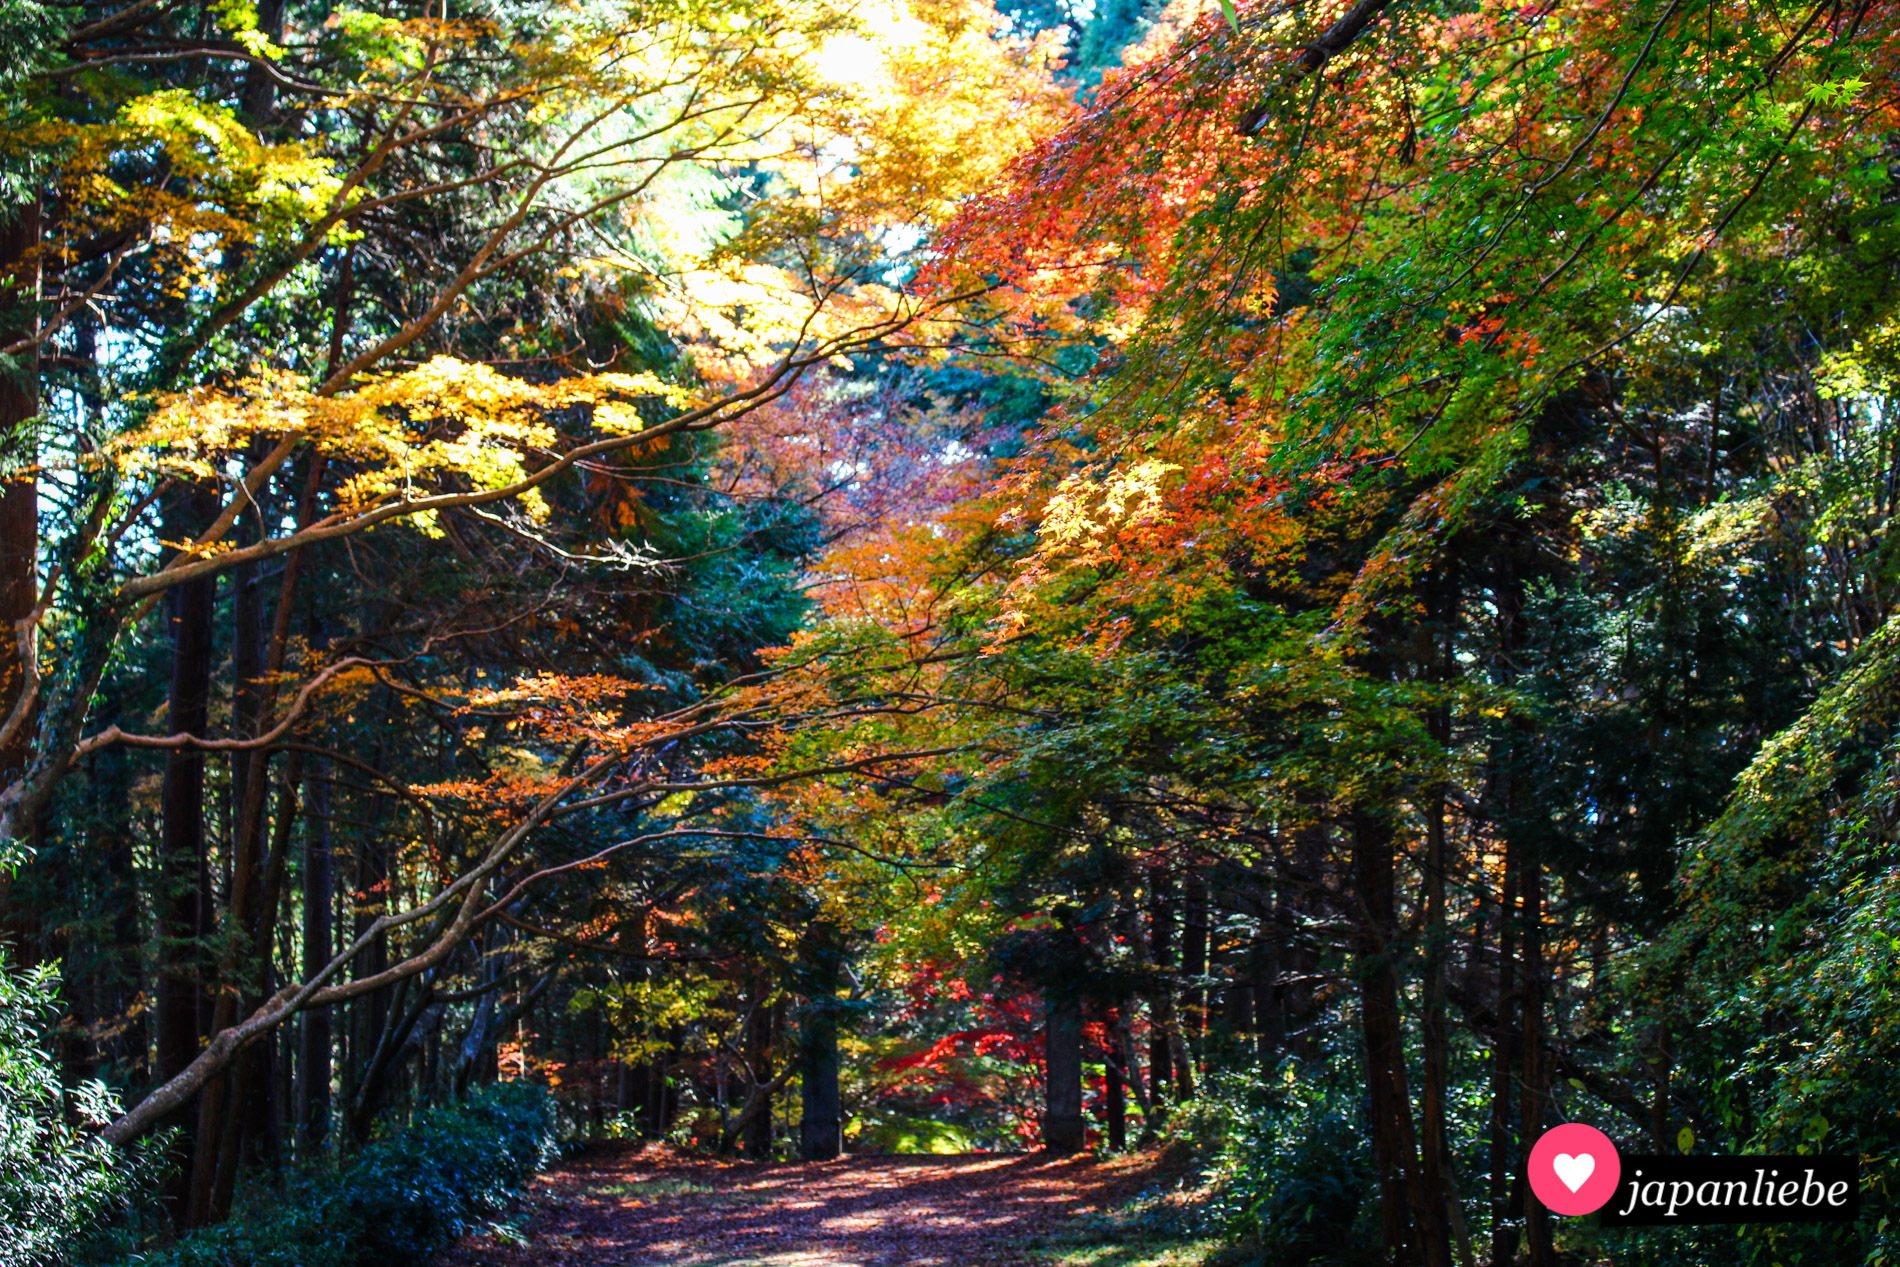 Der Weg hinab vom Nyohō-ji-Tempel in Ōzu führt durch einen im Herbst wundervolle gefärbten Herbstwald.